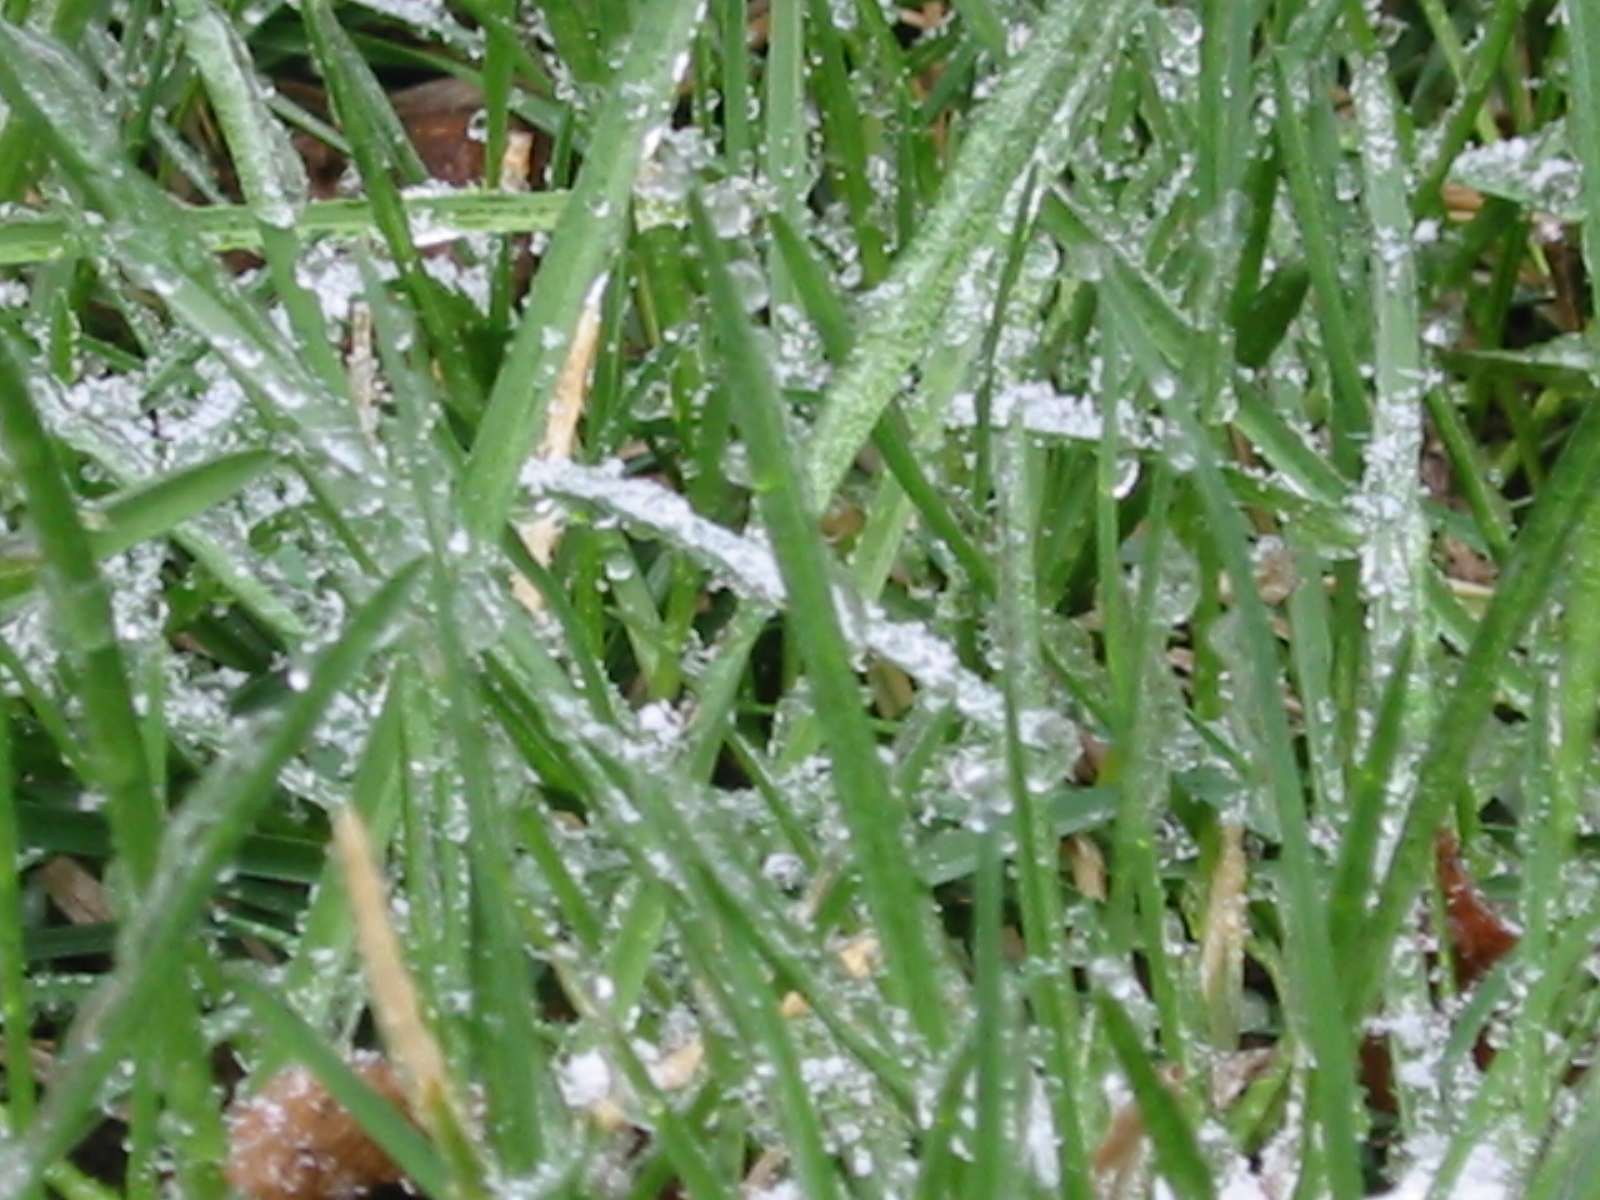 File:Rain frozen on grass.JPG - Wikimedia Commons